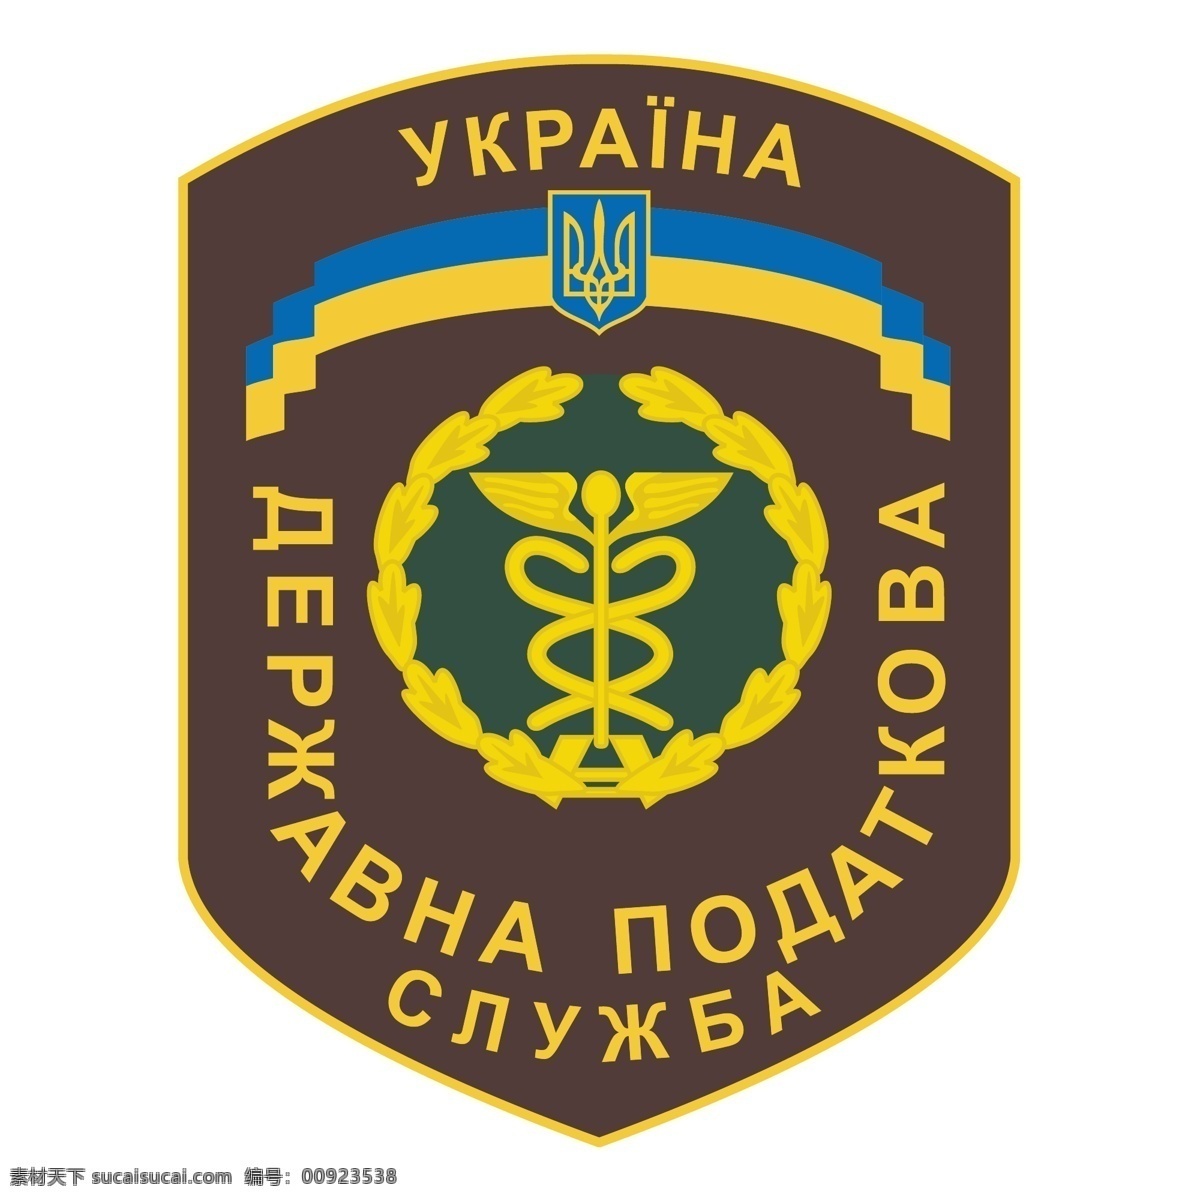 乌克兰 市 国家税务局 标志 自由 国家税务总局 免费 psd源文件 logo设计